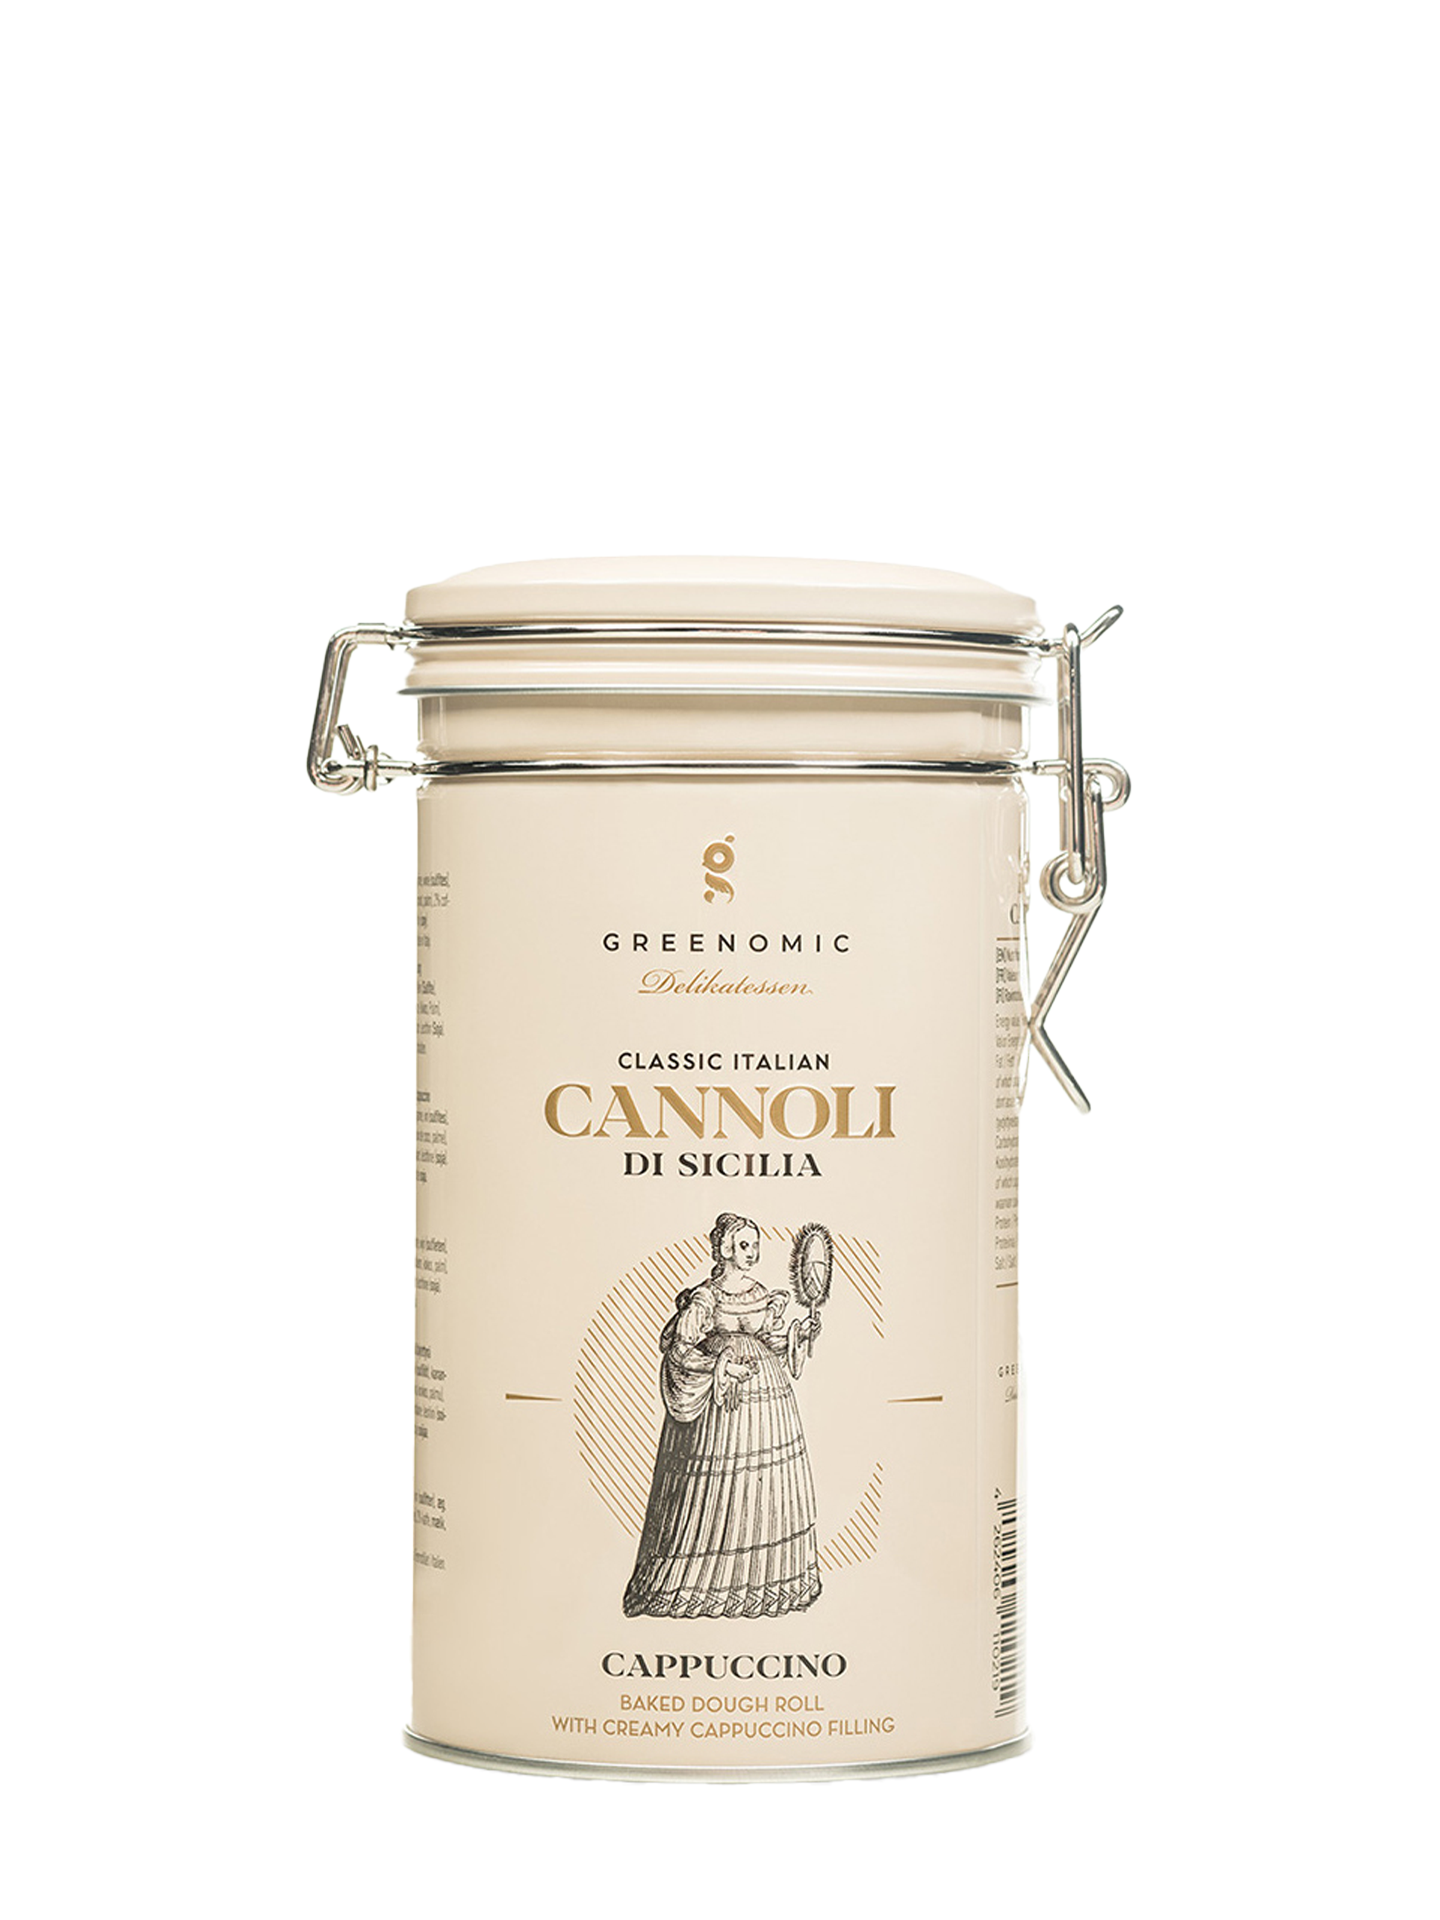 Cannoli di Sicilia Cappuccino in Tin Jar